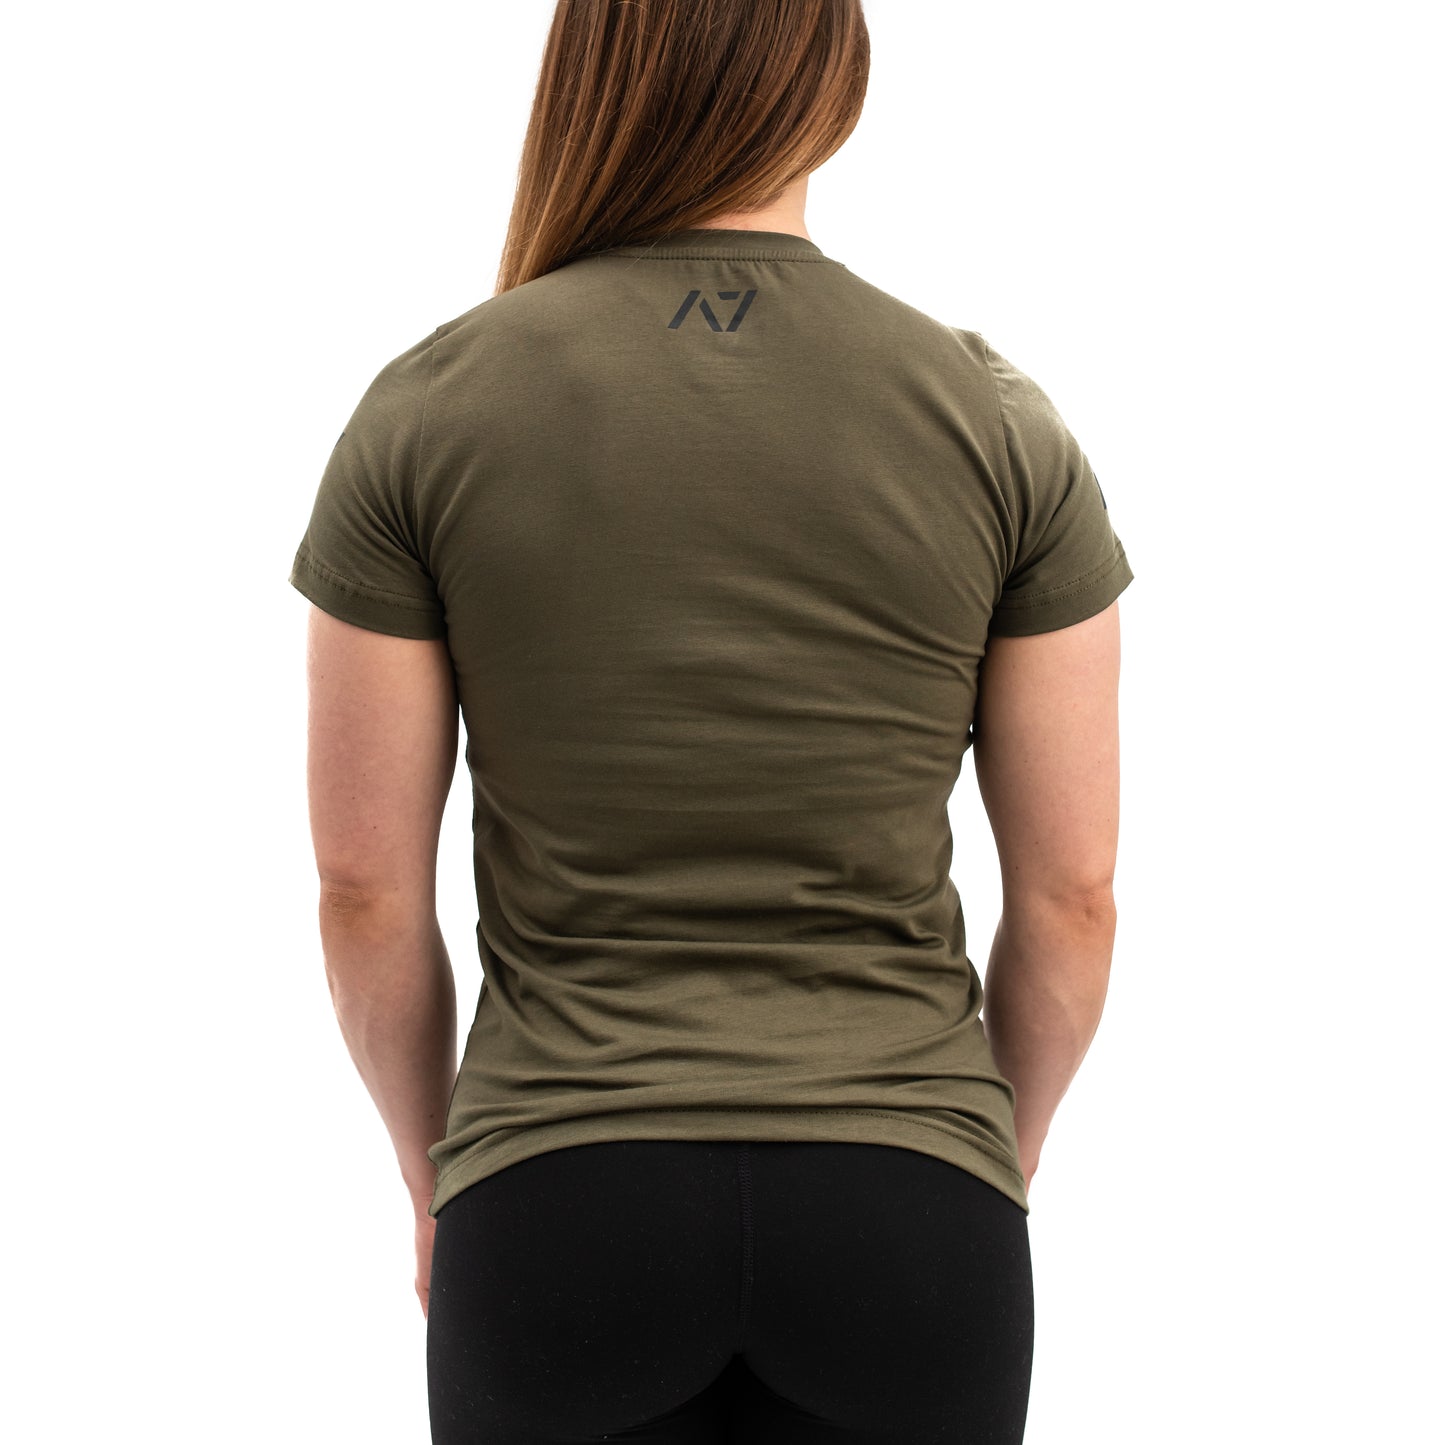 
                  
                    Demand Greatness IPF Approved Logo Women's Meet Shirt - Military
                  
                